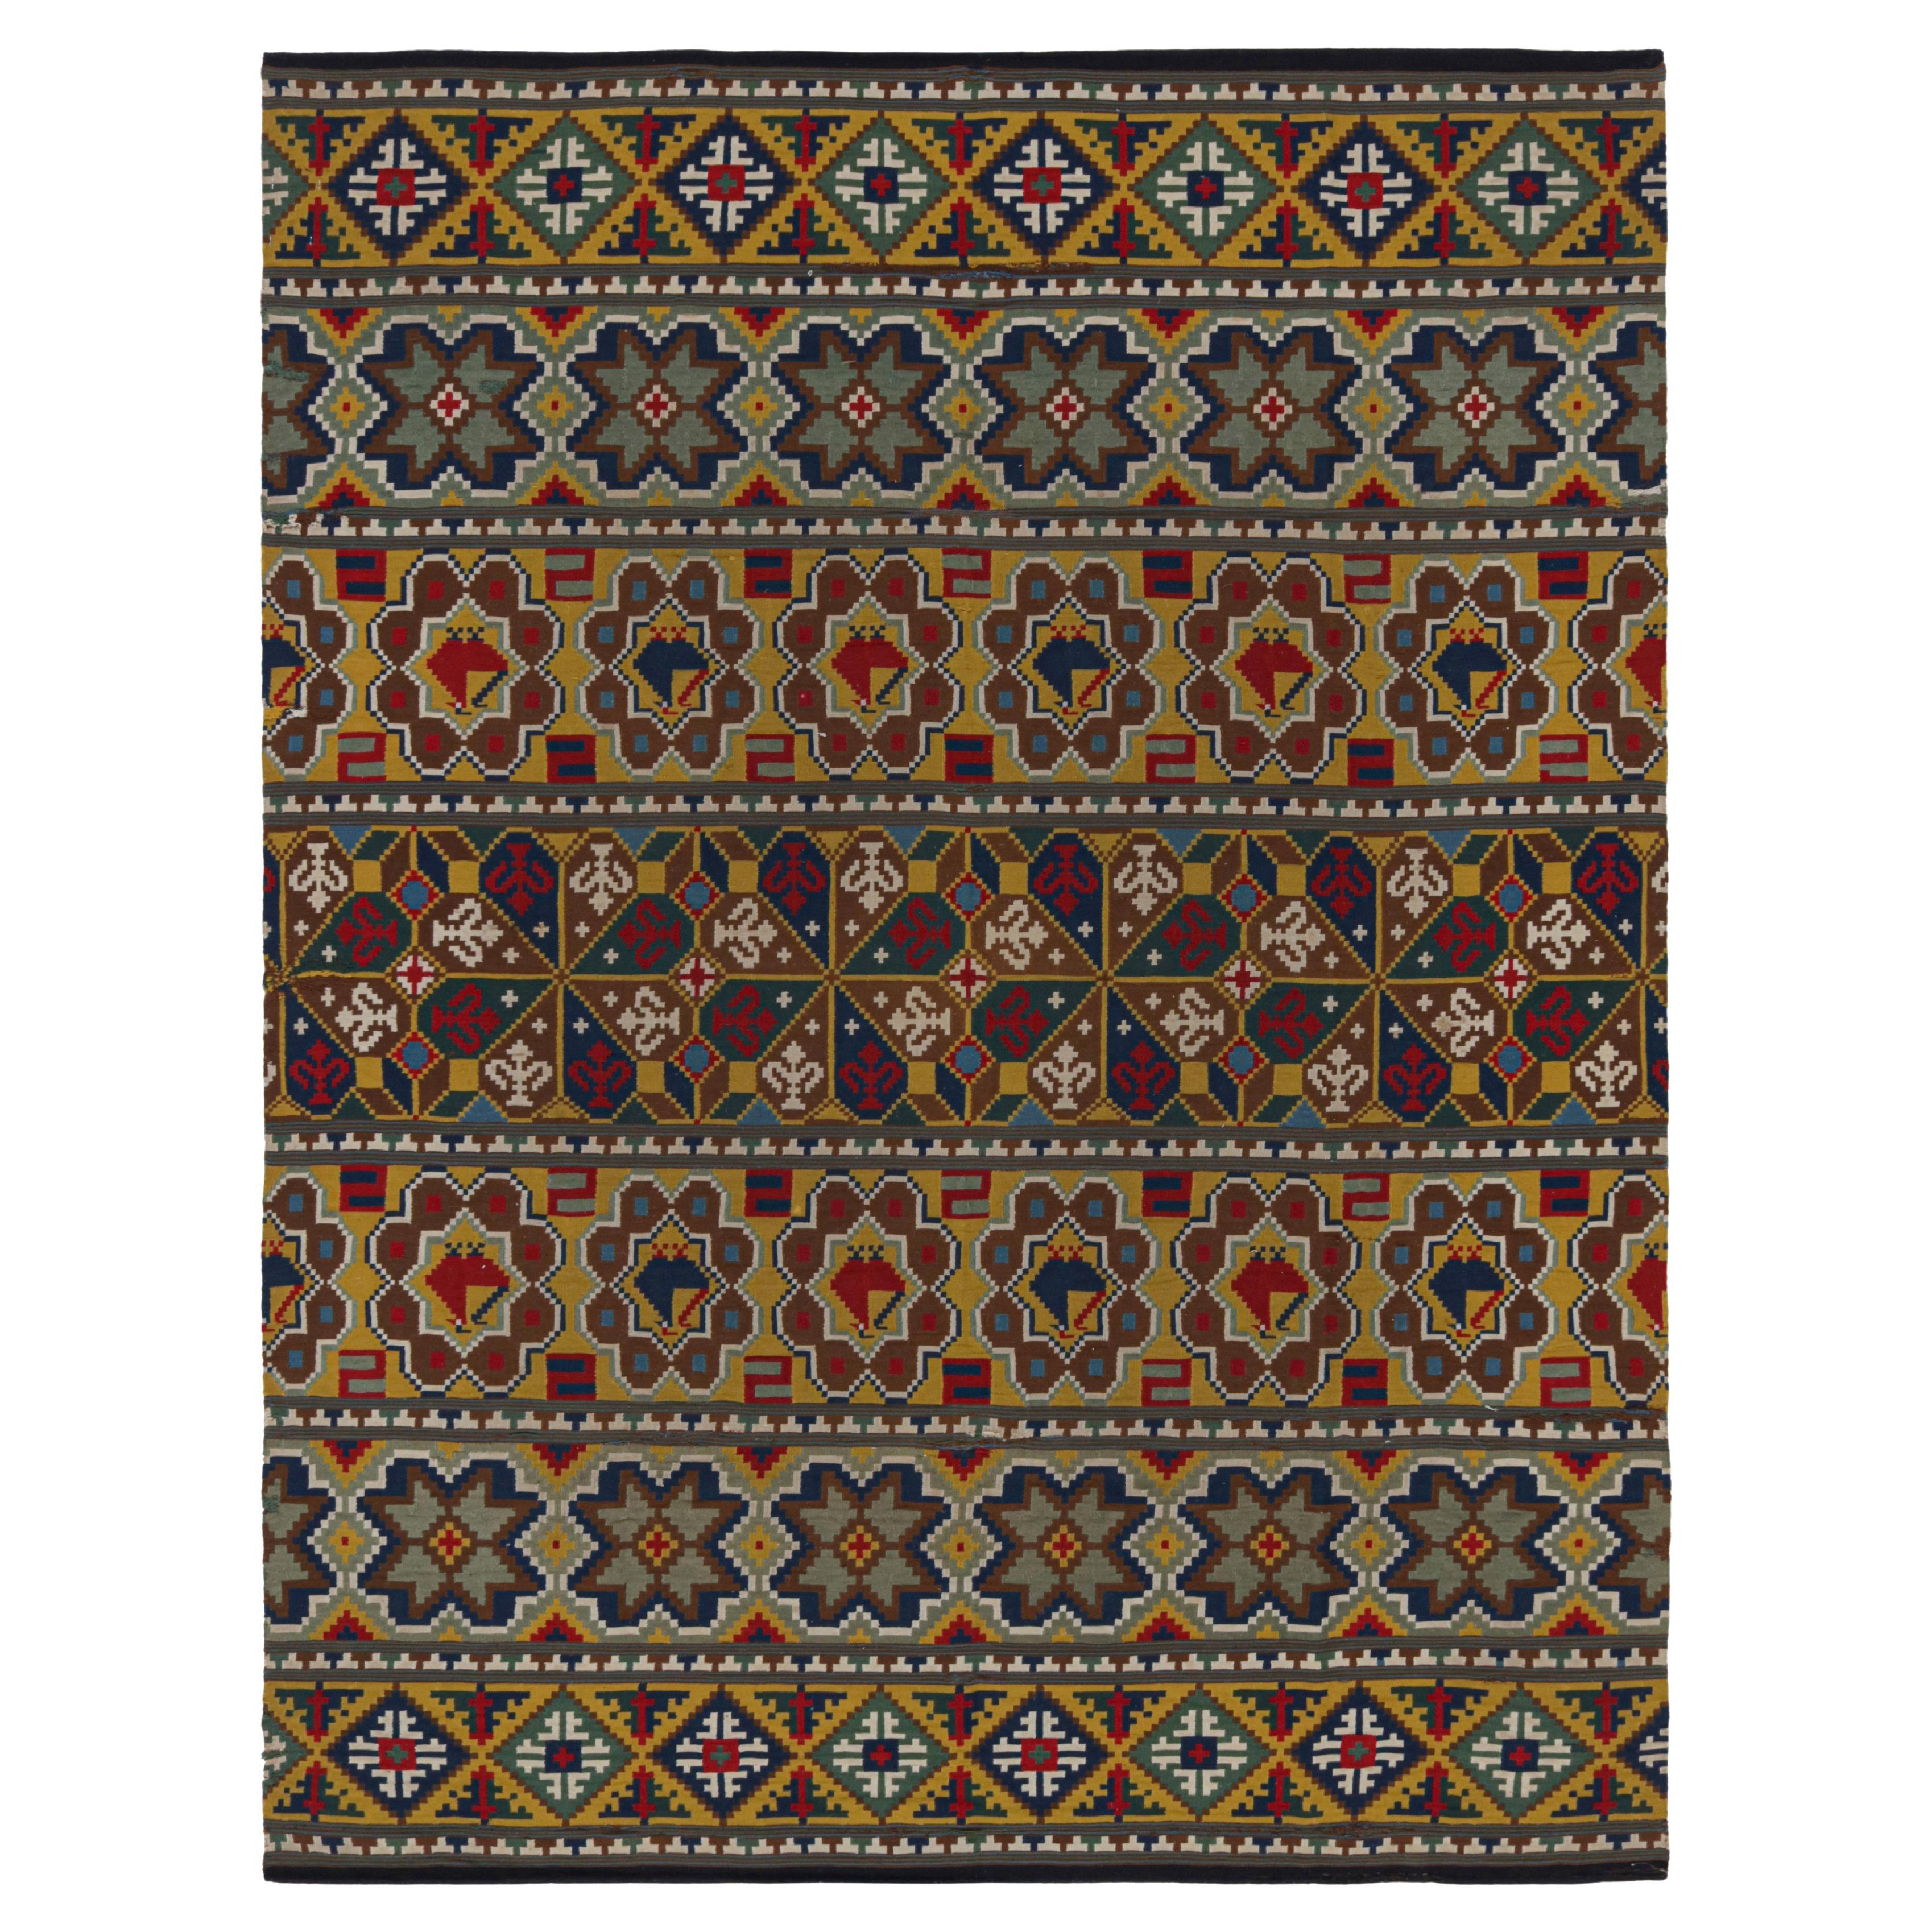 Textile suédois ancien à motifs polychromes et graphique de Rug & Kilim